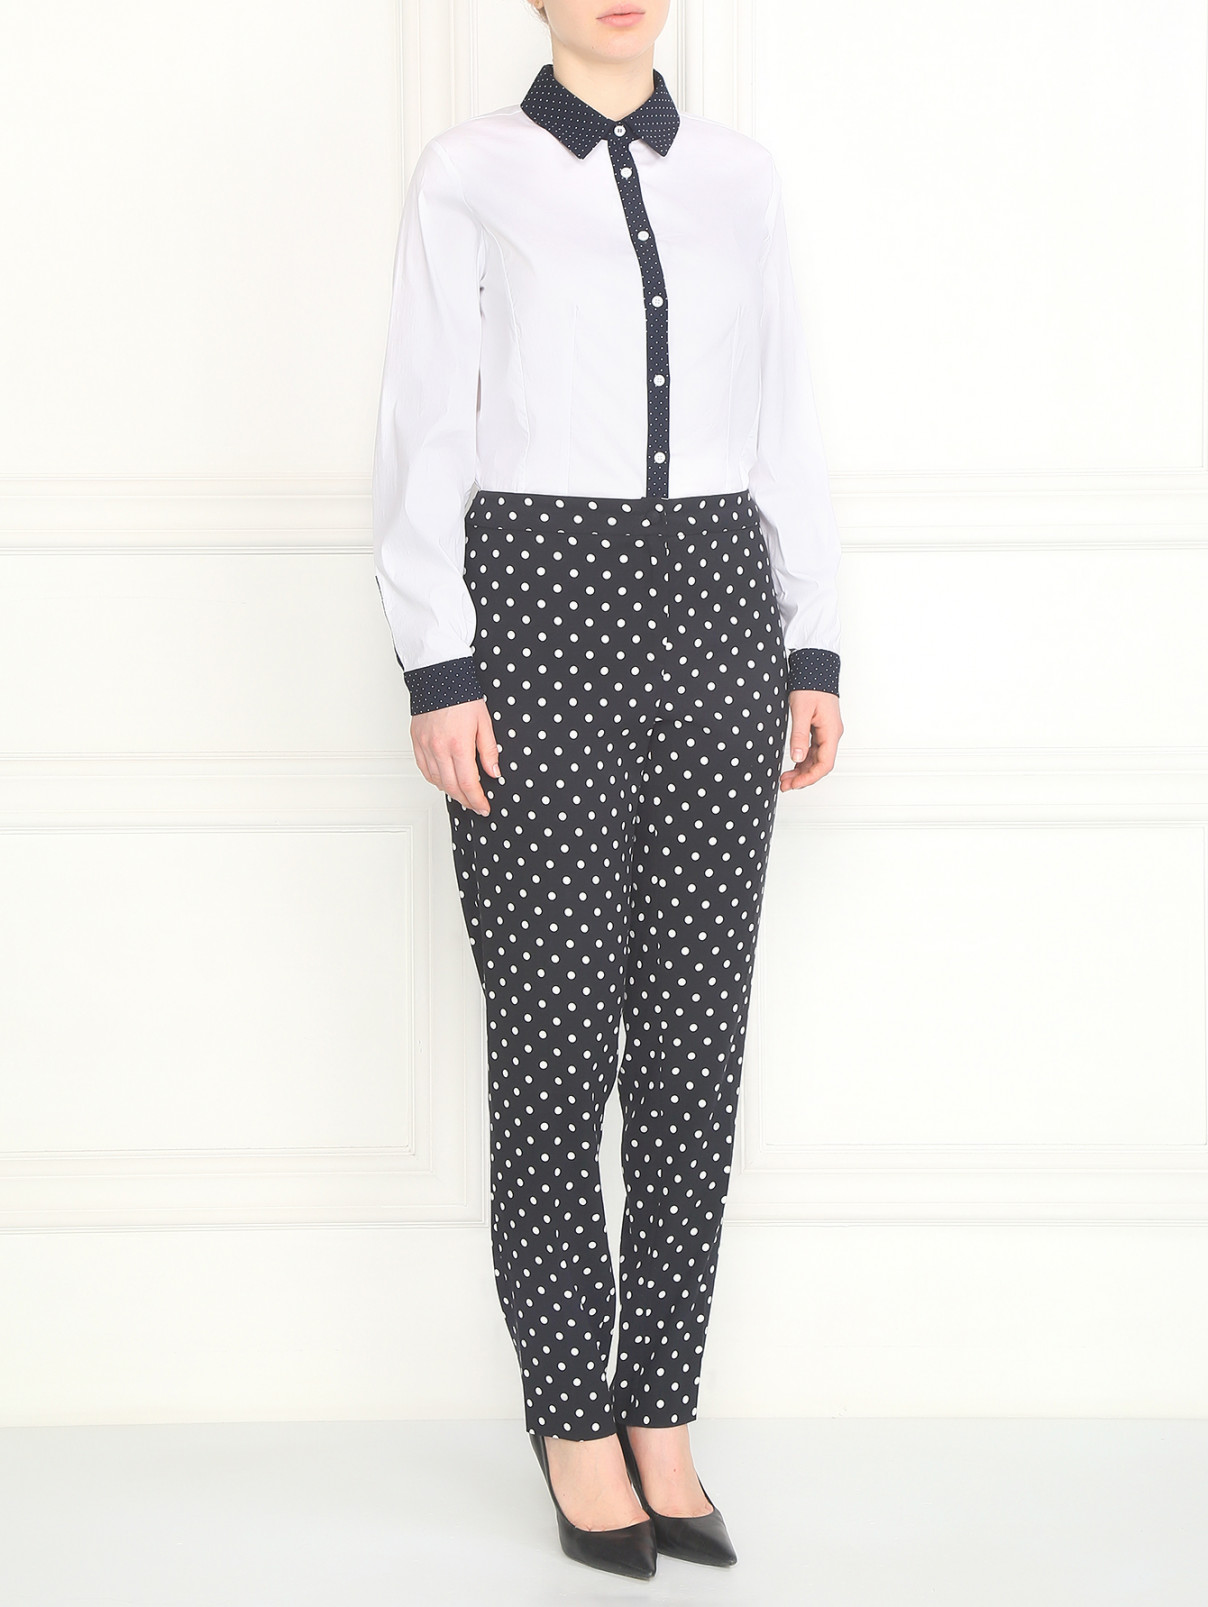 Рубашка из хлопка с контрастными вставками Marina Rinaldi  –  Модель Общий вид  – Цвет:  Белый